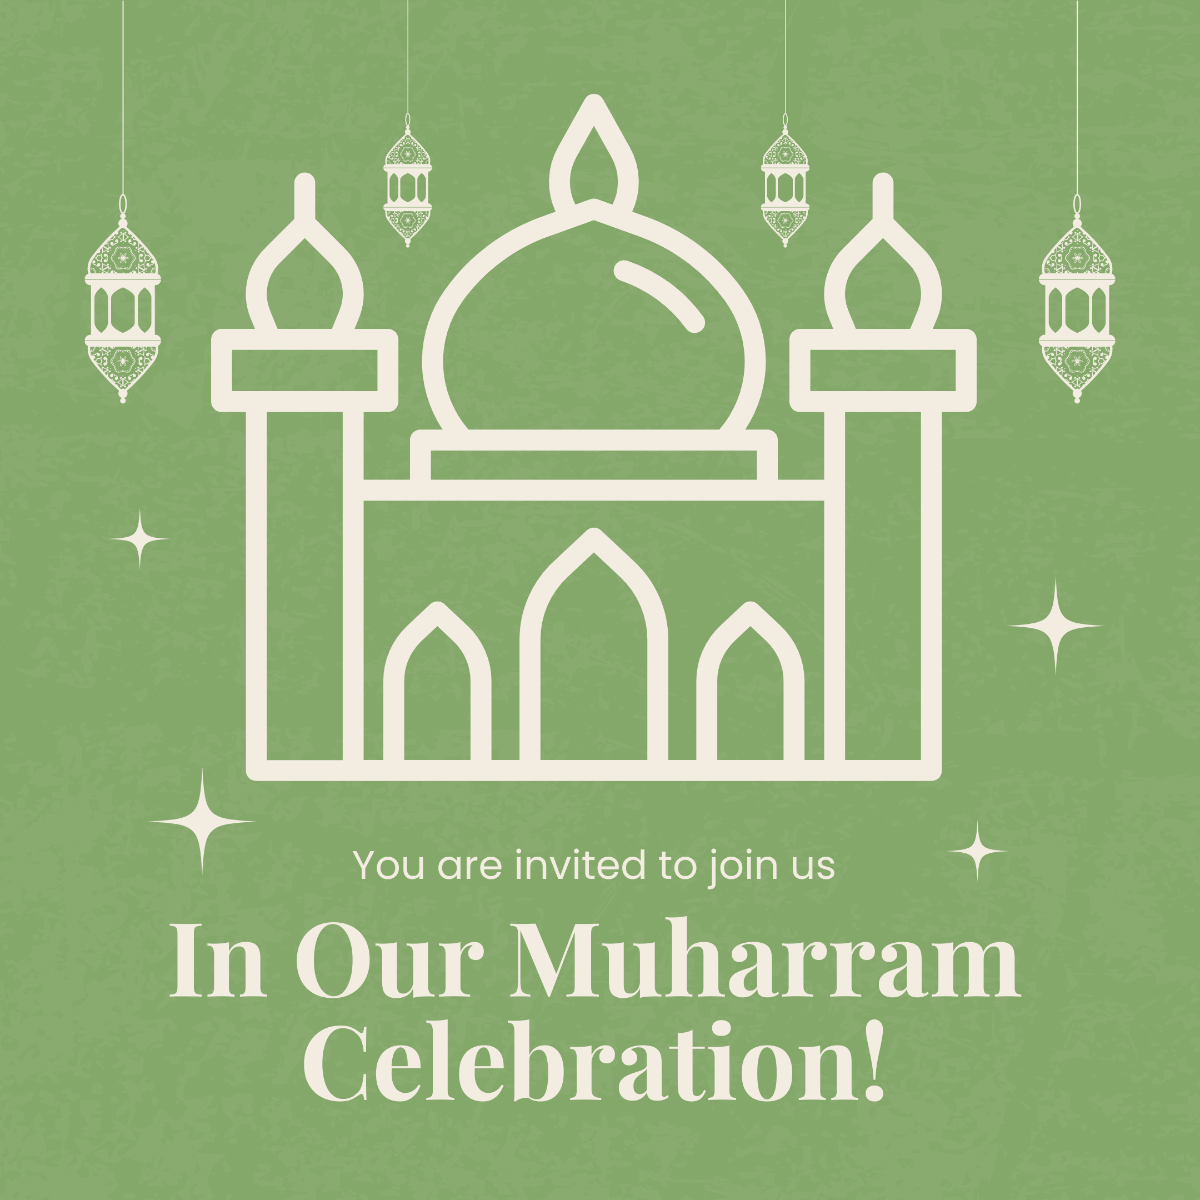 Muharram Celebration Instagram Post